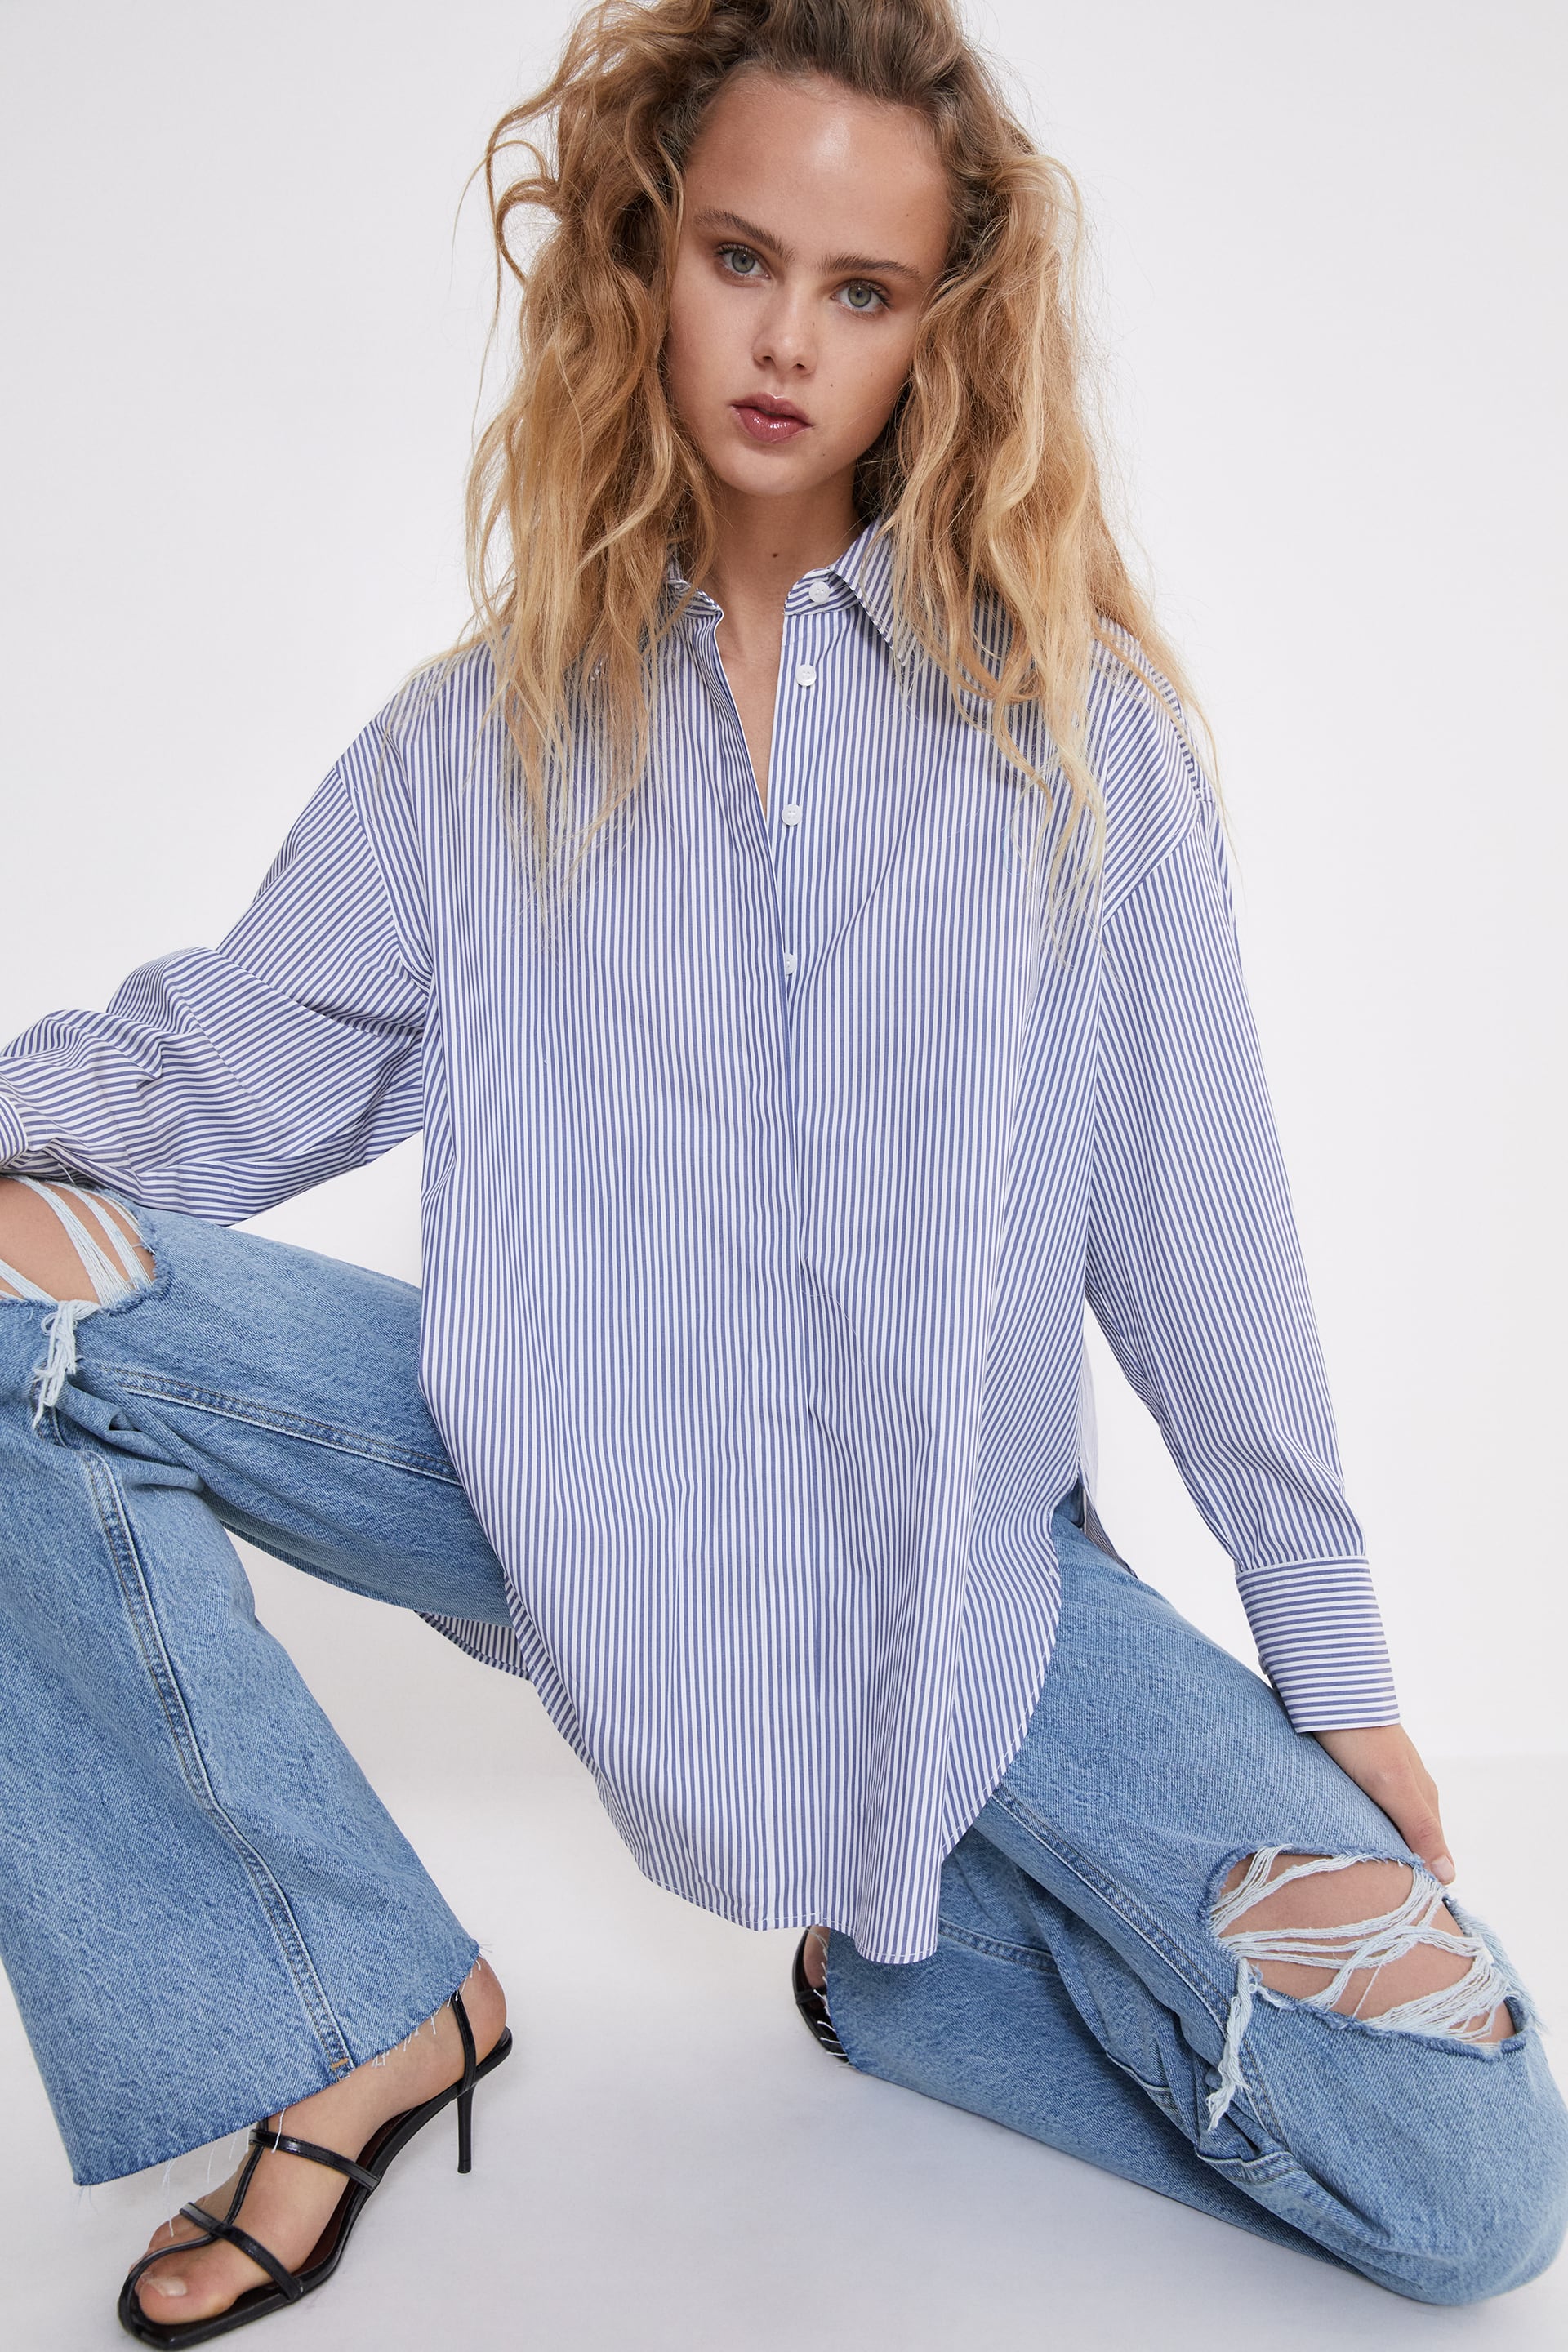 Zara Women’s Wear 100 Items Jeans And Tops